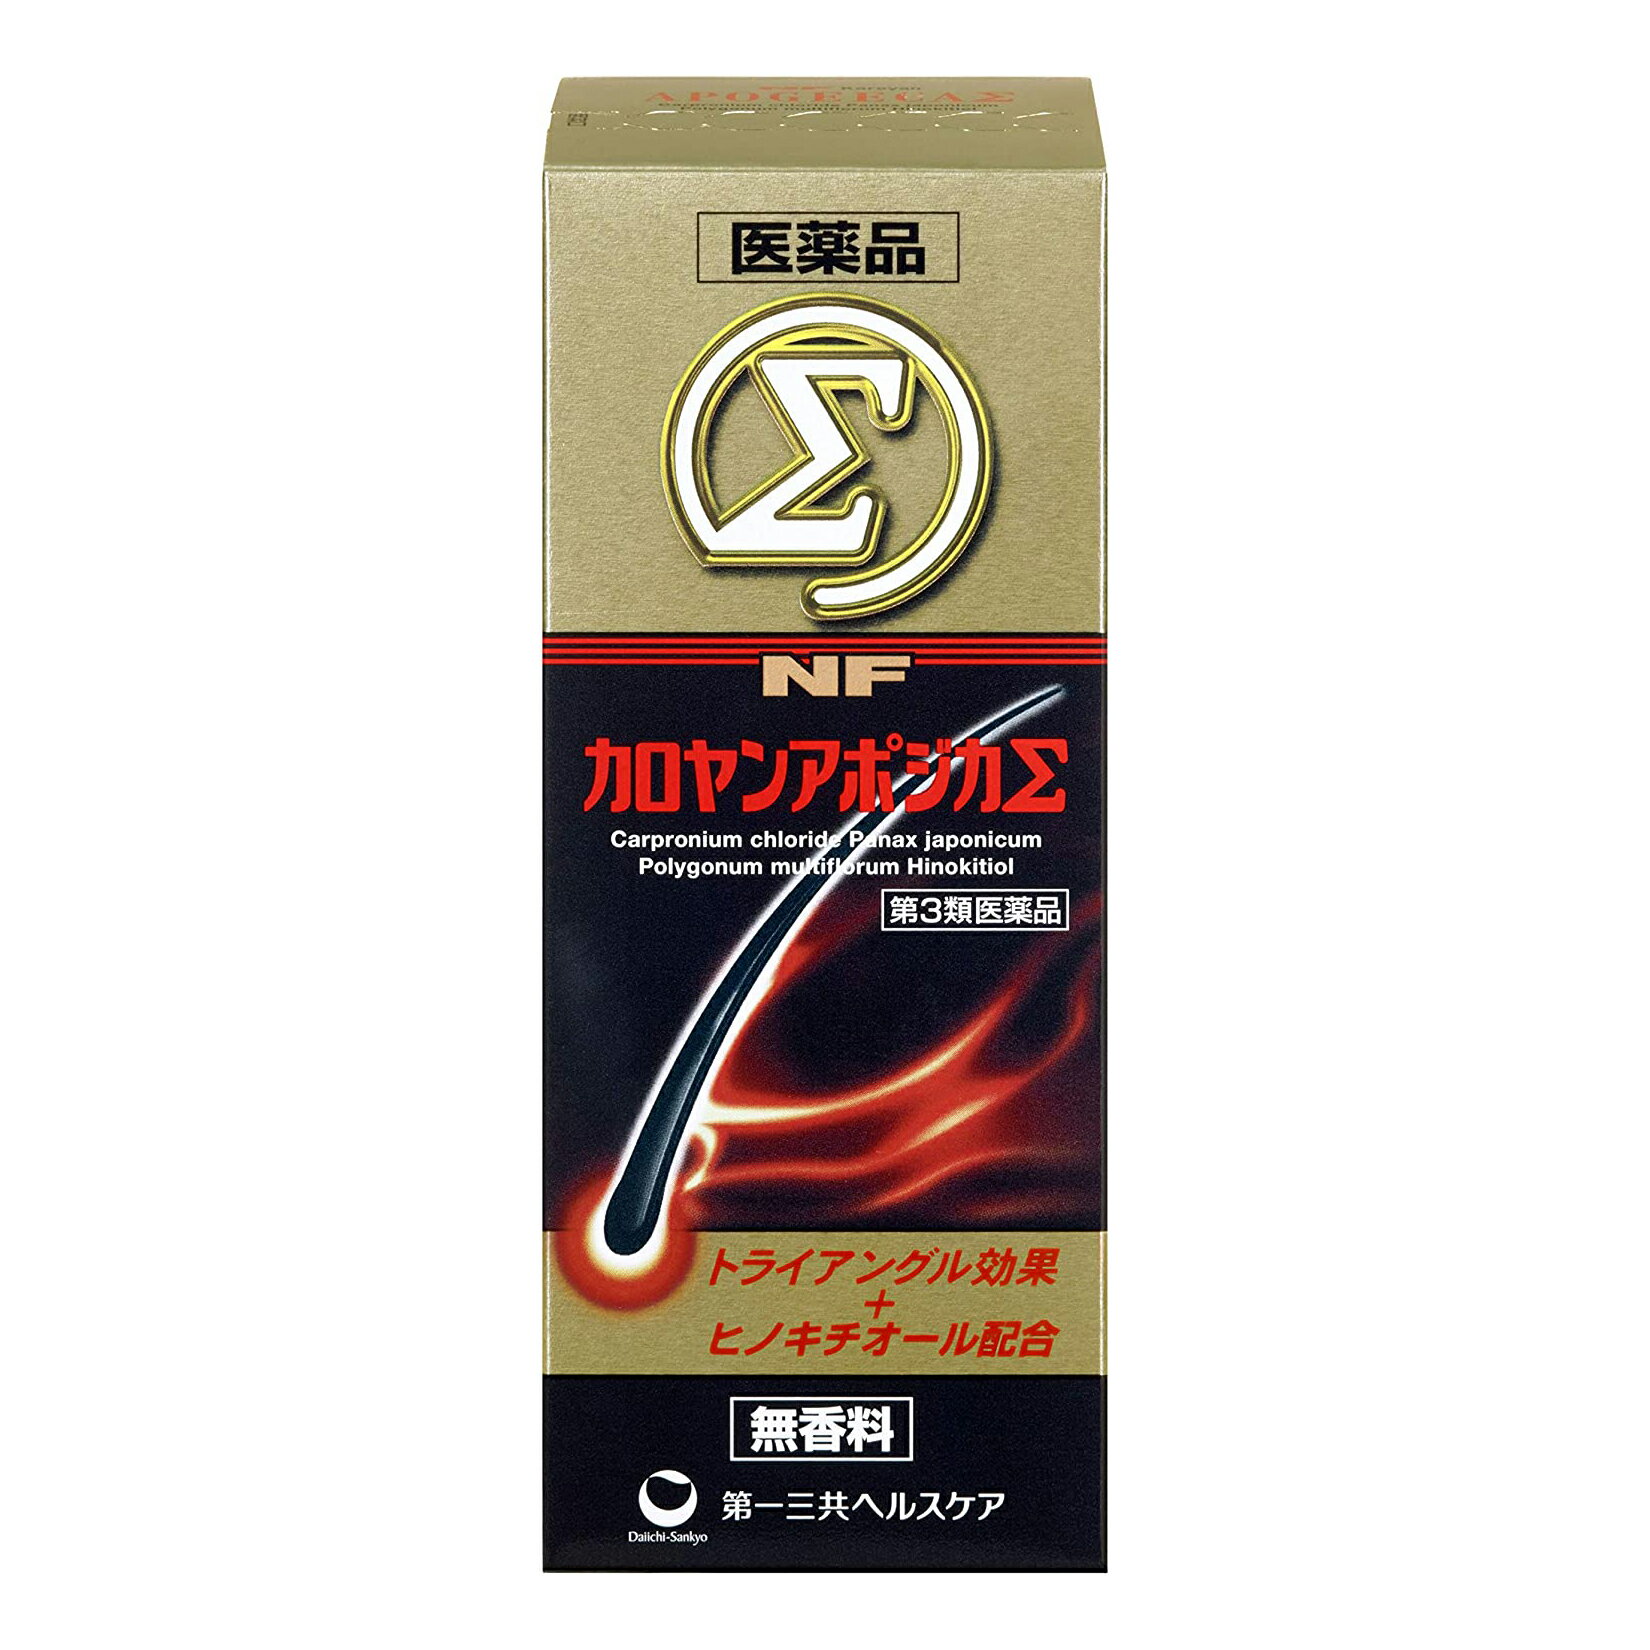 【第3類医薬品】カロヤンプログレ EX オイリー 120ml